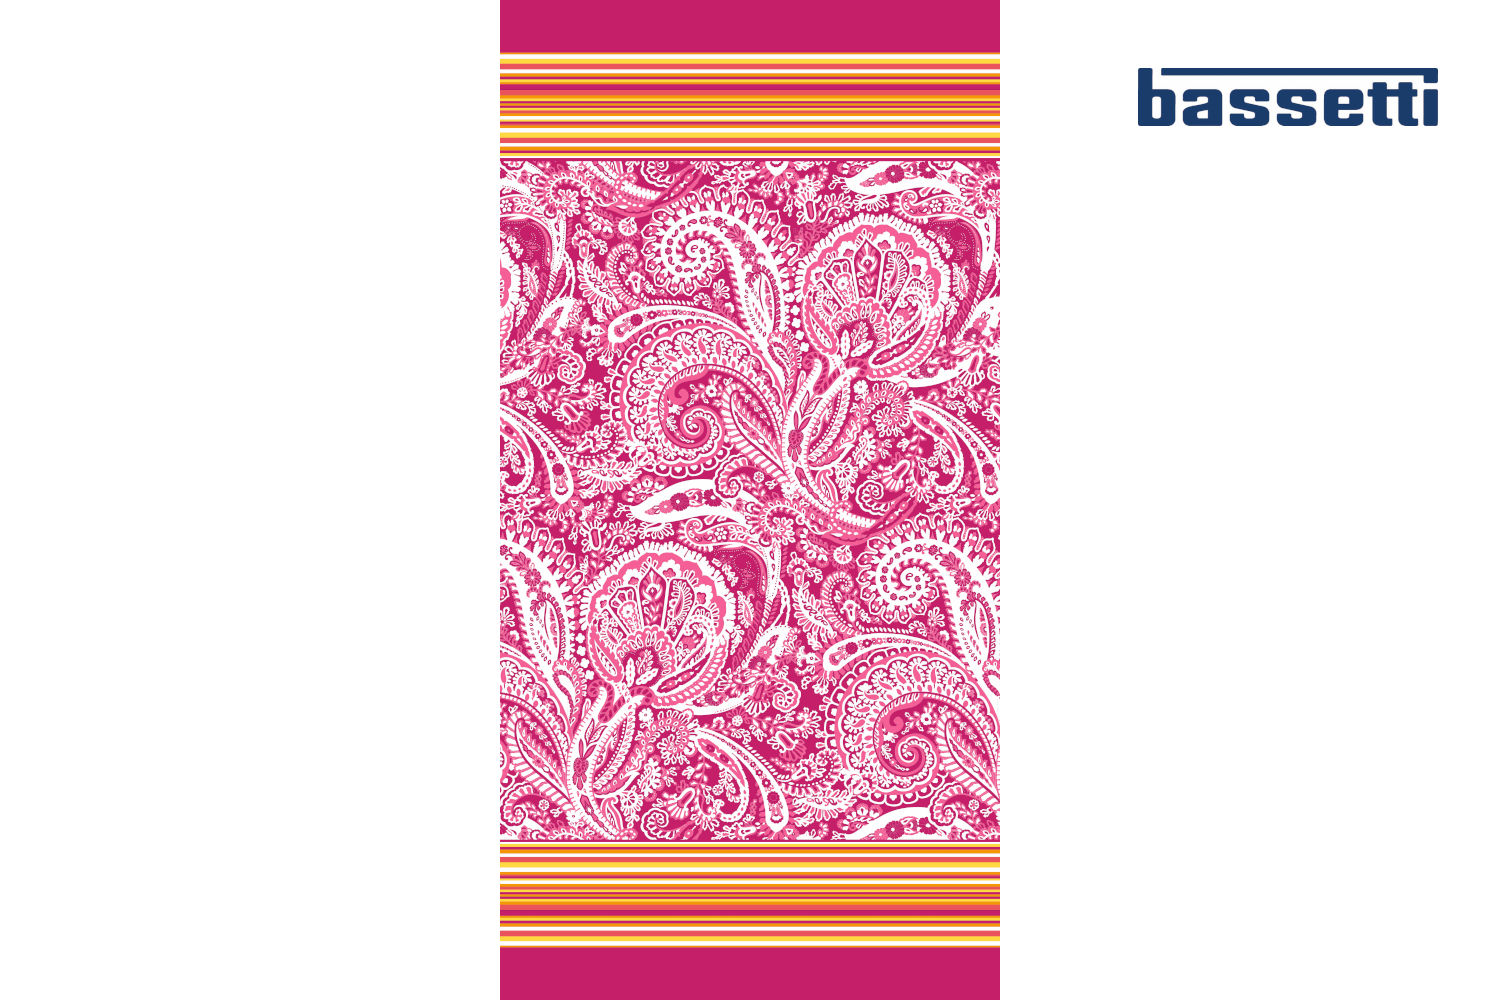 Bassetti Strandtuch Noto rosa/bunt, aus 100% Baumwolle, 90x180 cm 